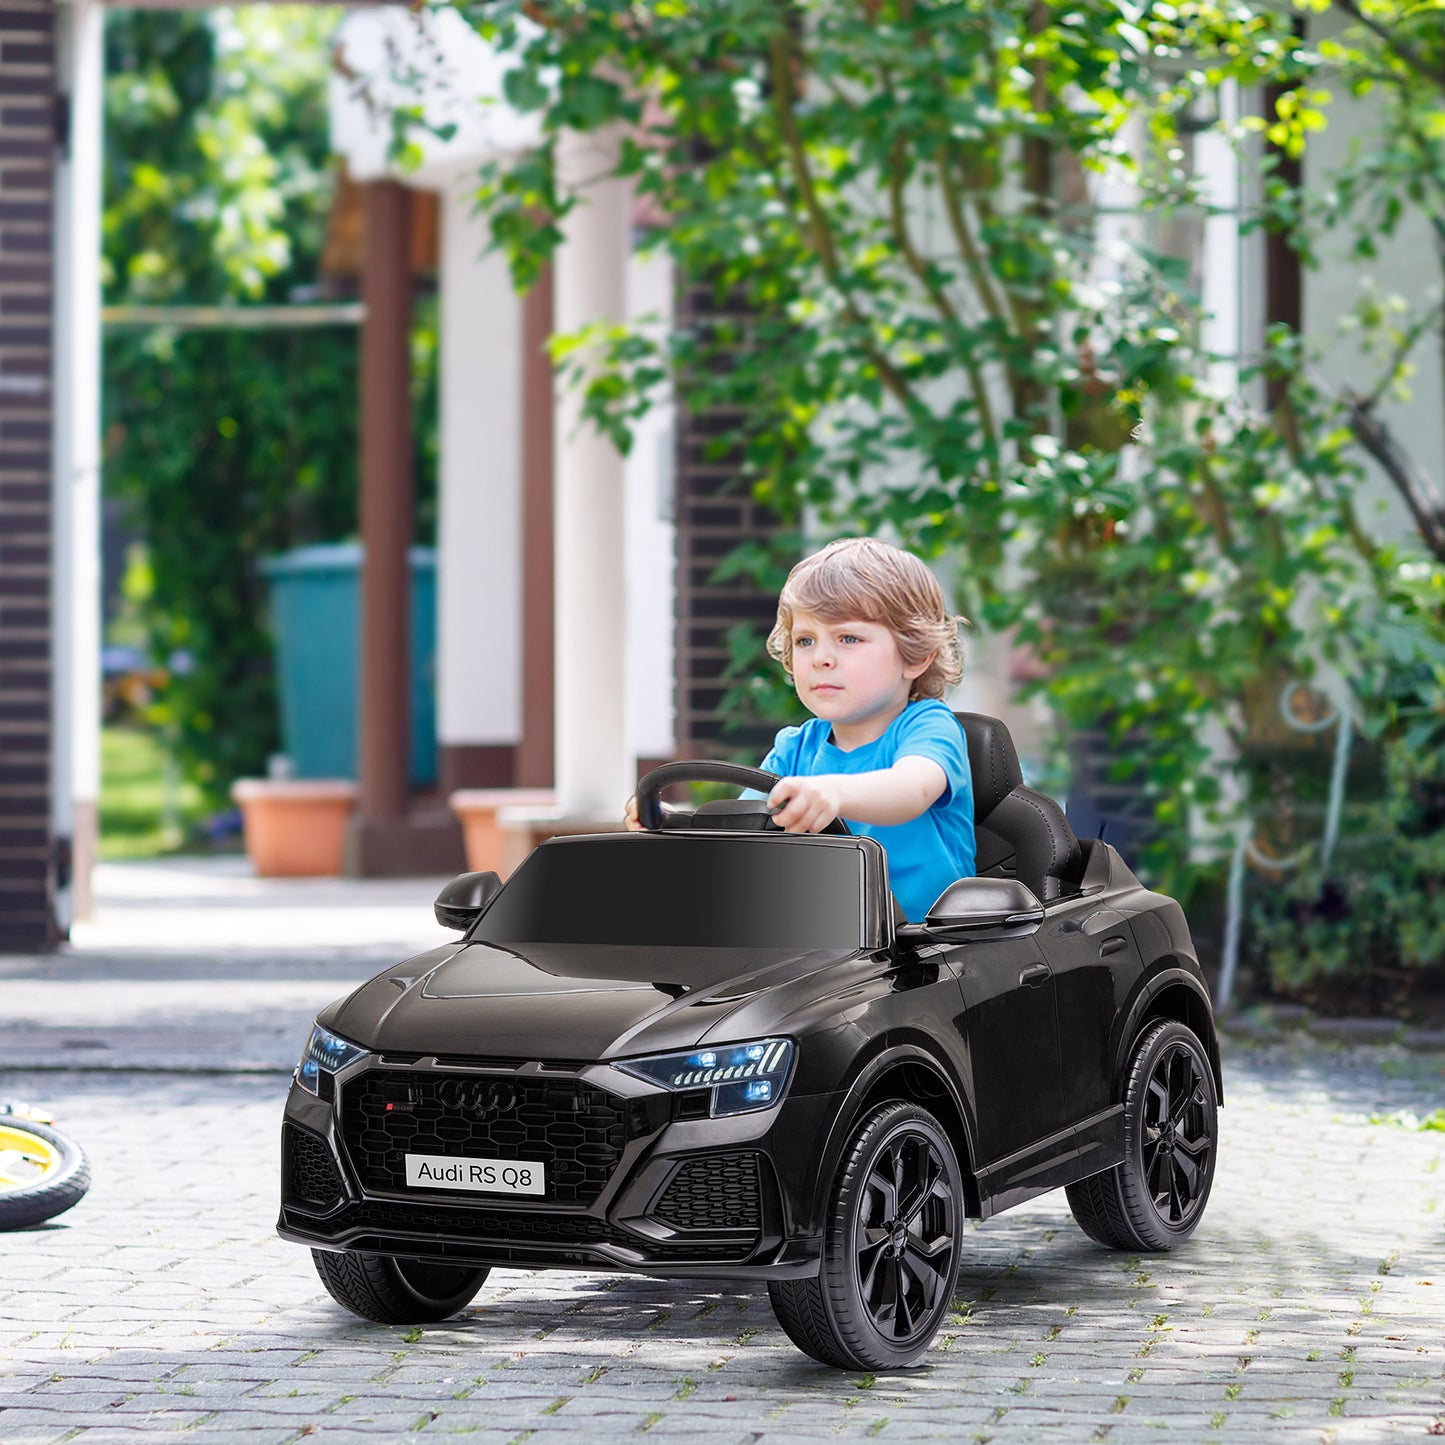 HOMCOM Coche Eléctrico Infantil +3 Años Licencia Audi RS Q8 con Batería 6V 2 Motores Mando a Distancia Música MP3 Bocina y Luces Velocidad Máx. 3km/h 101x62x51 cm Negro